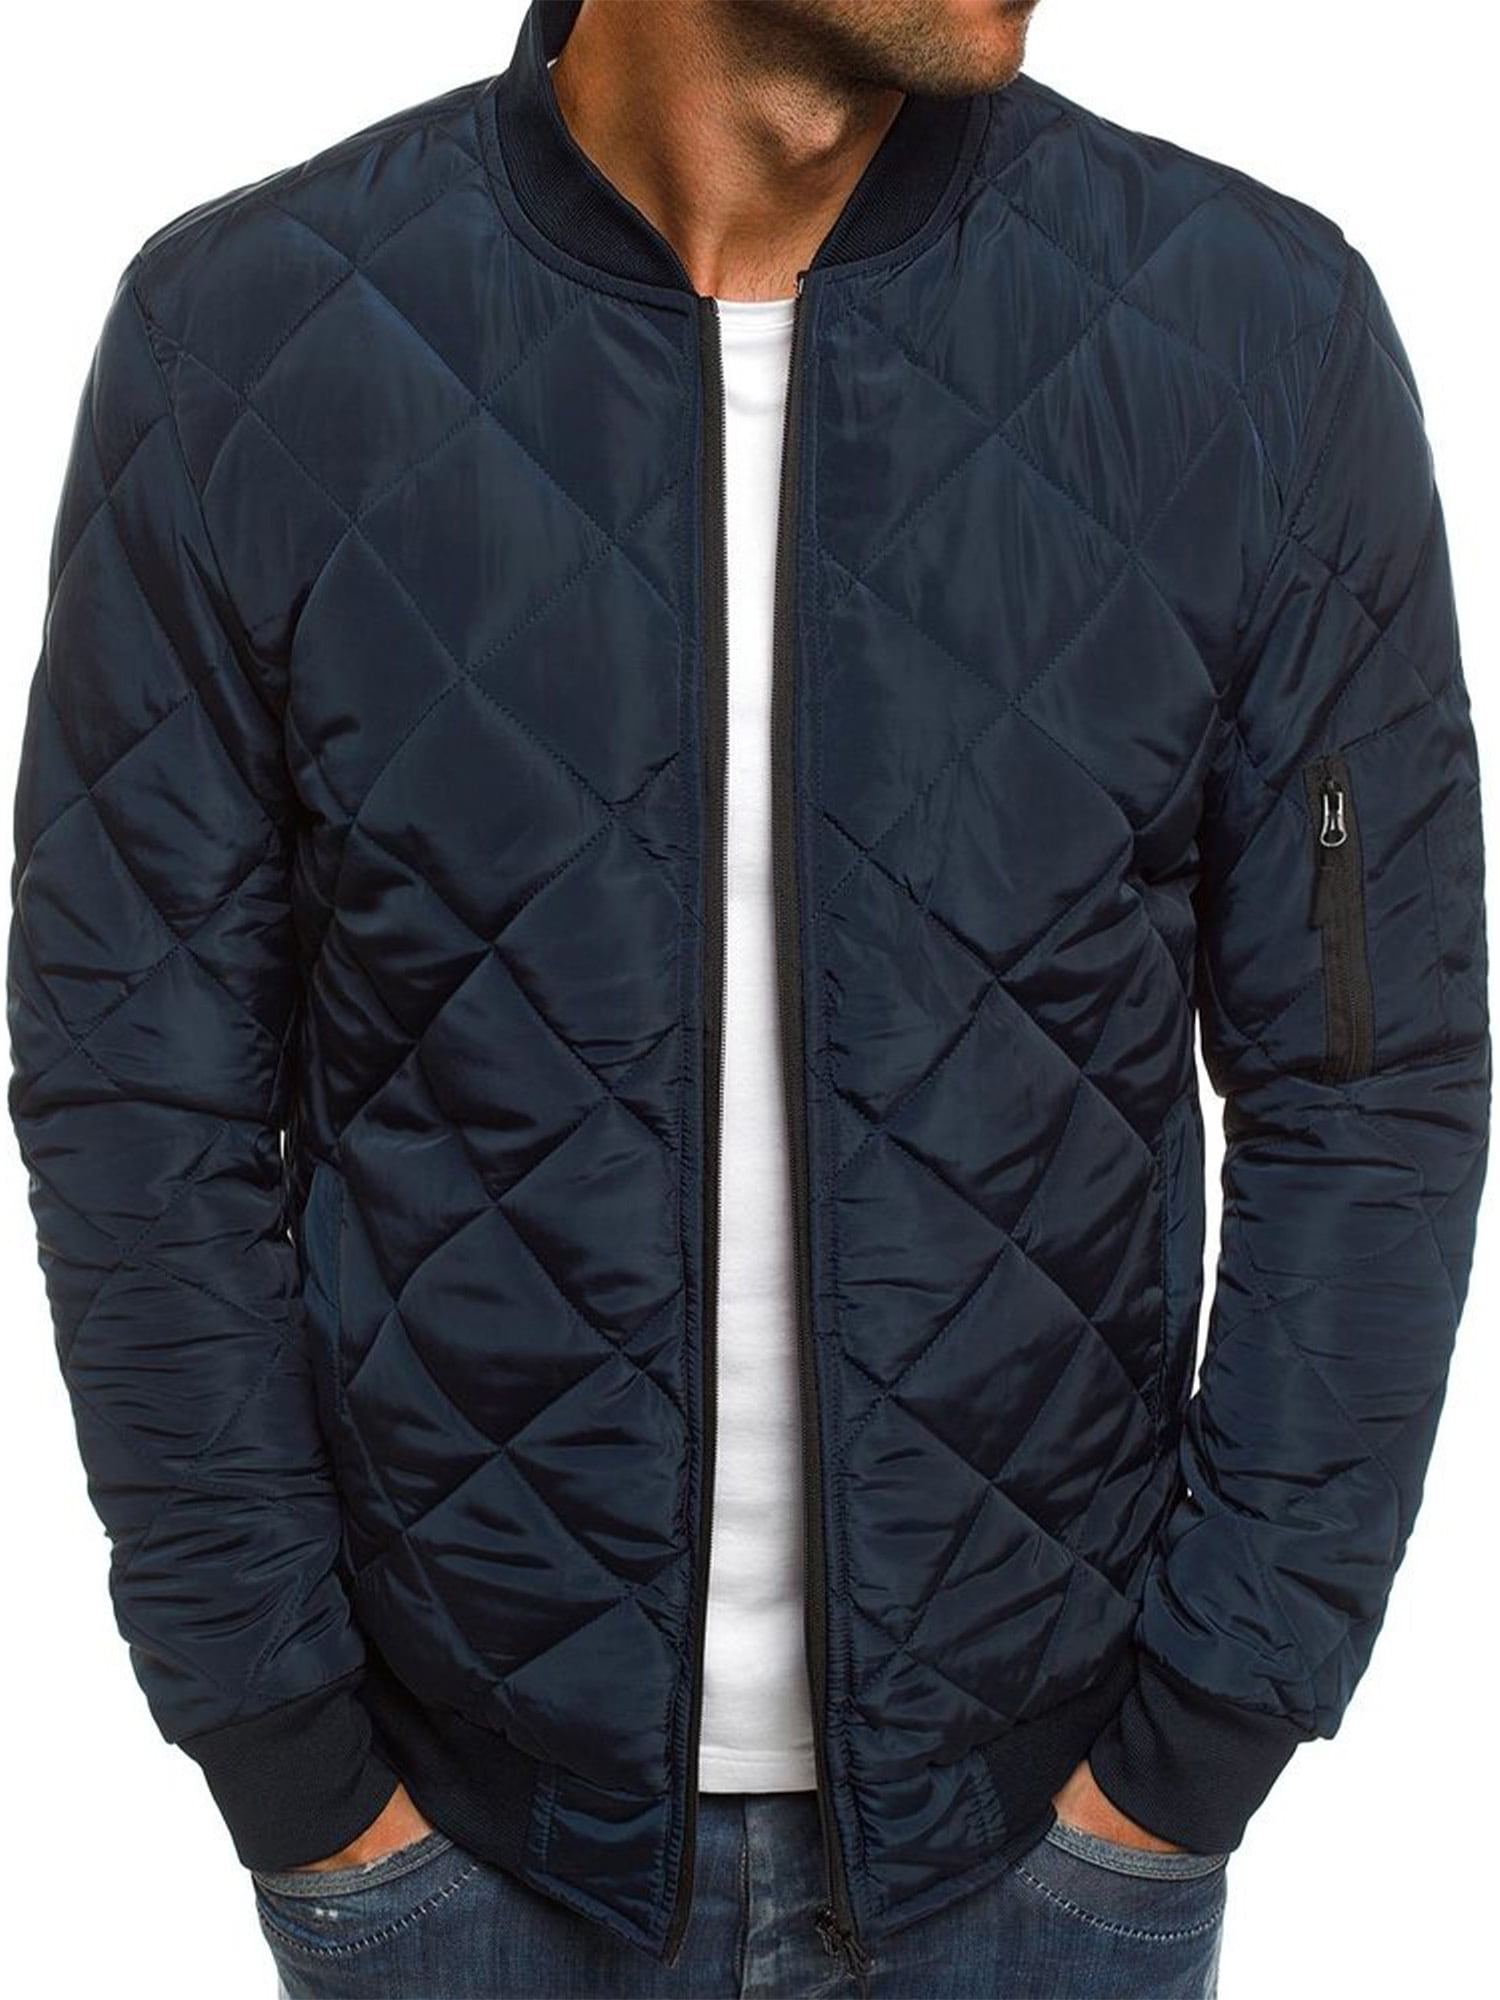 Men's Cotton Fleece Lined Jacket Slim Fit Plain Zipper Outwear Bomber Warm Coat